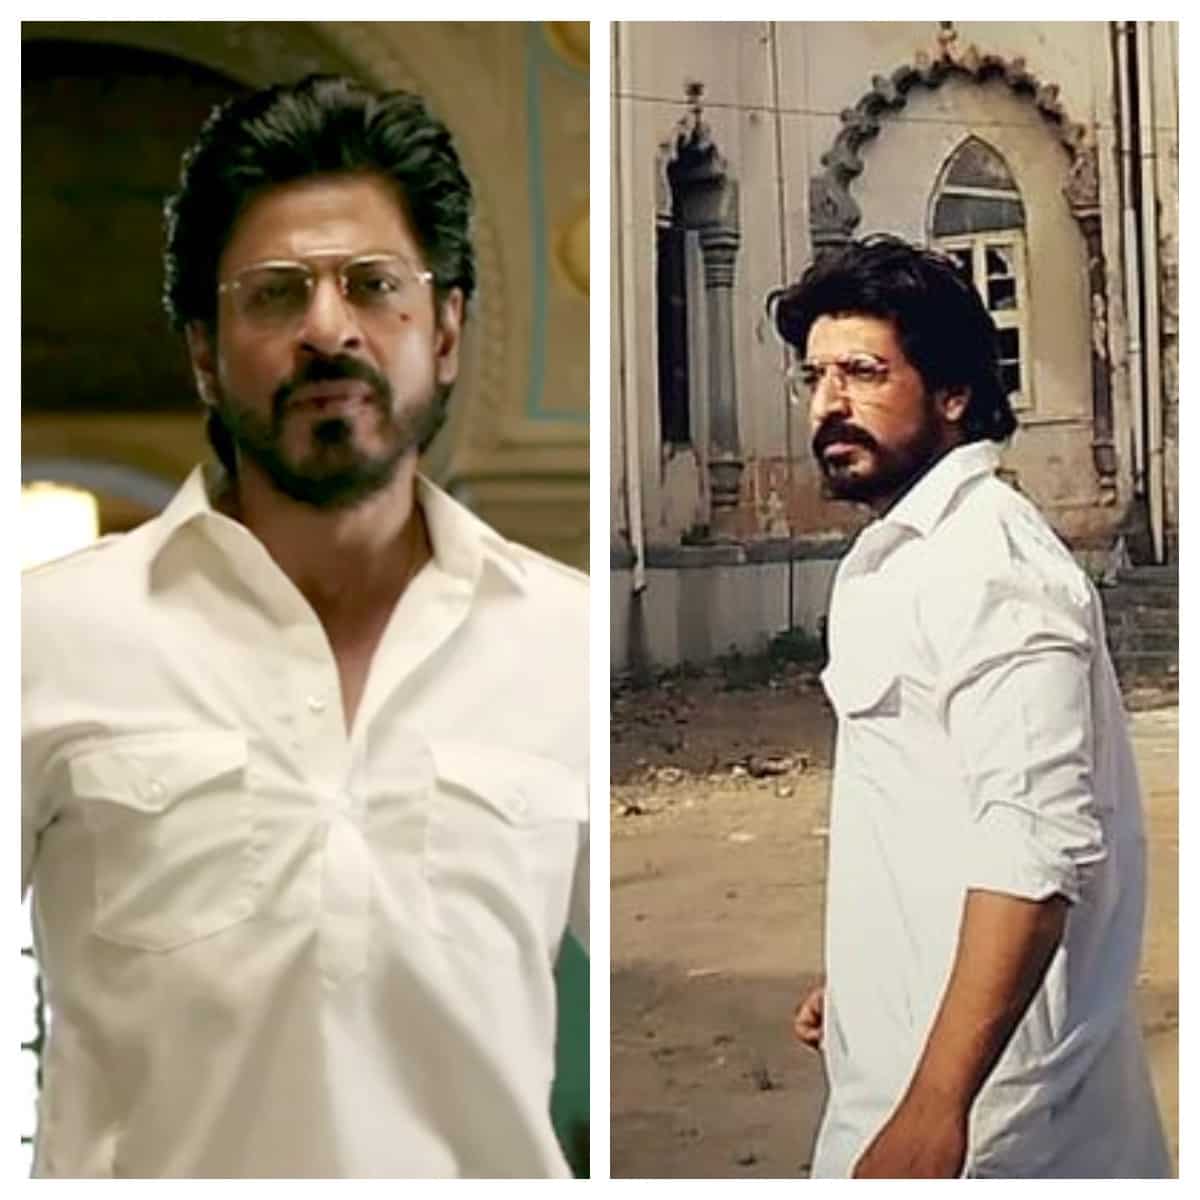 SRK's doppelganger, Ibrahim Qadri in Raees look